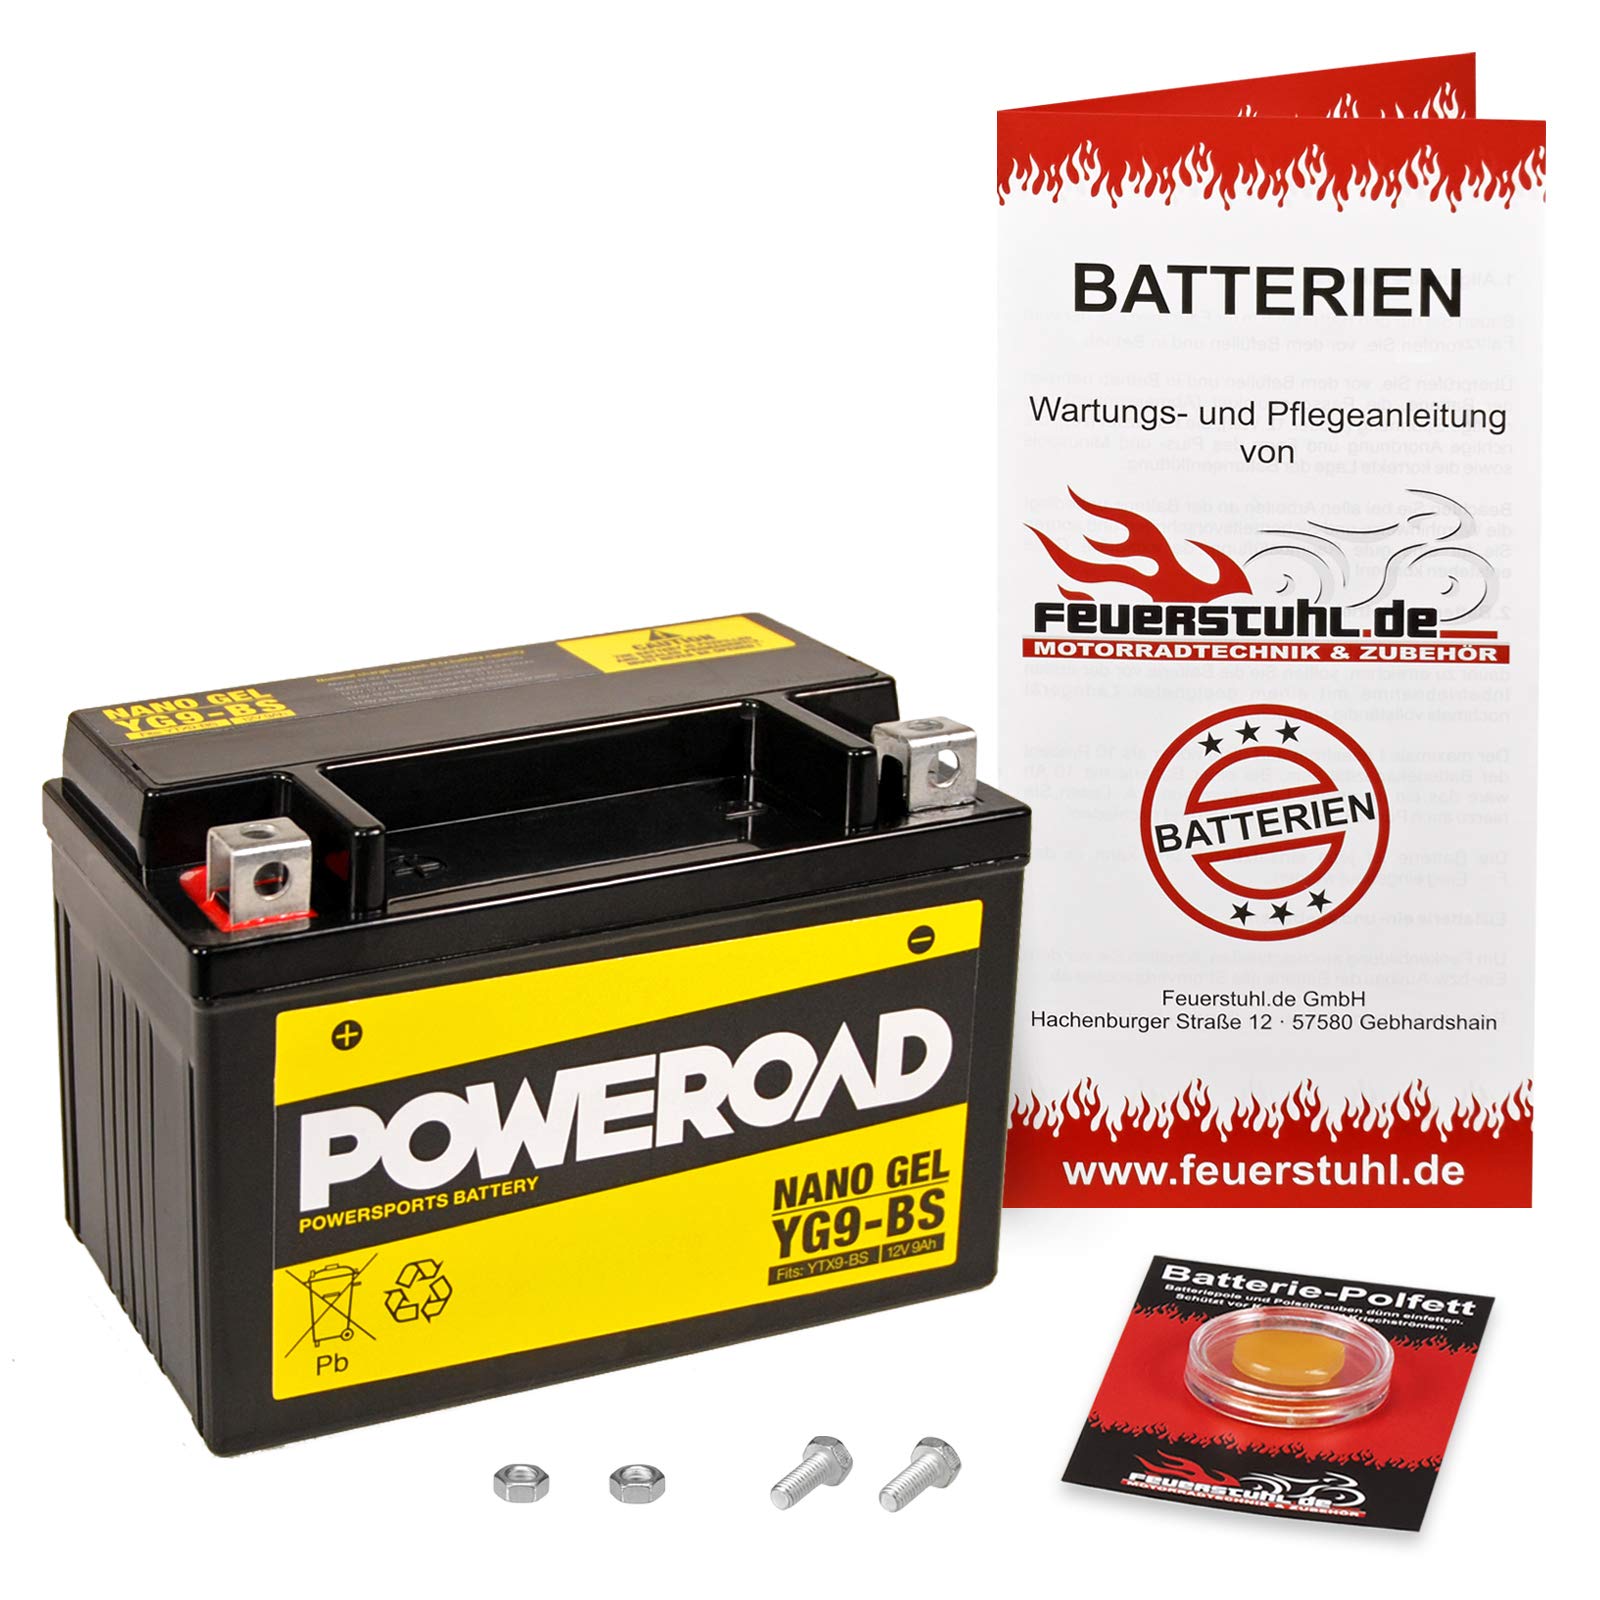 Gel-Batterie für Honda CB-1 400 F (NC27) wartungsfrei, einbaufertig, startklar, inkl. 7,50€ Pfand von Feuerstuhl.de GmbH